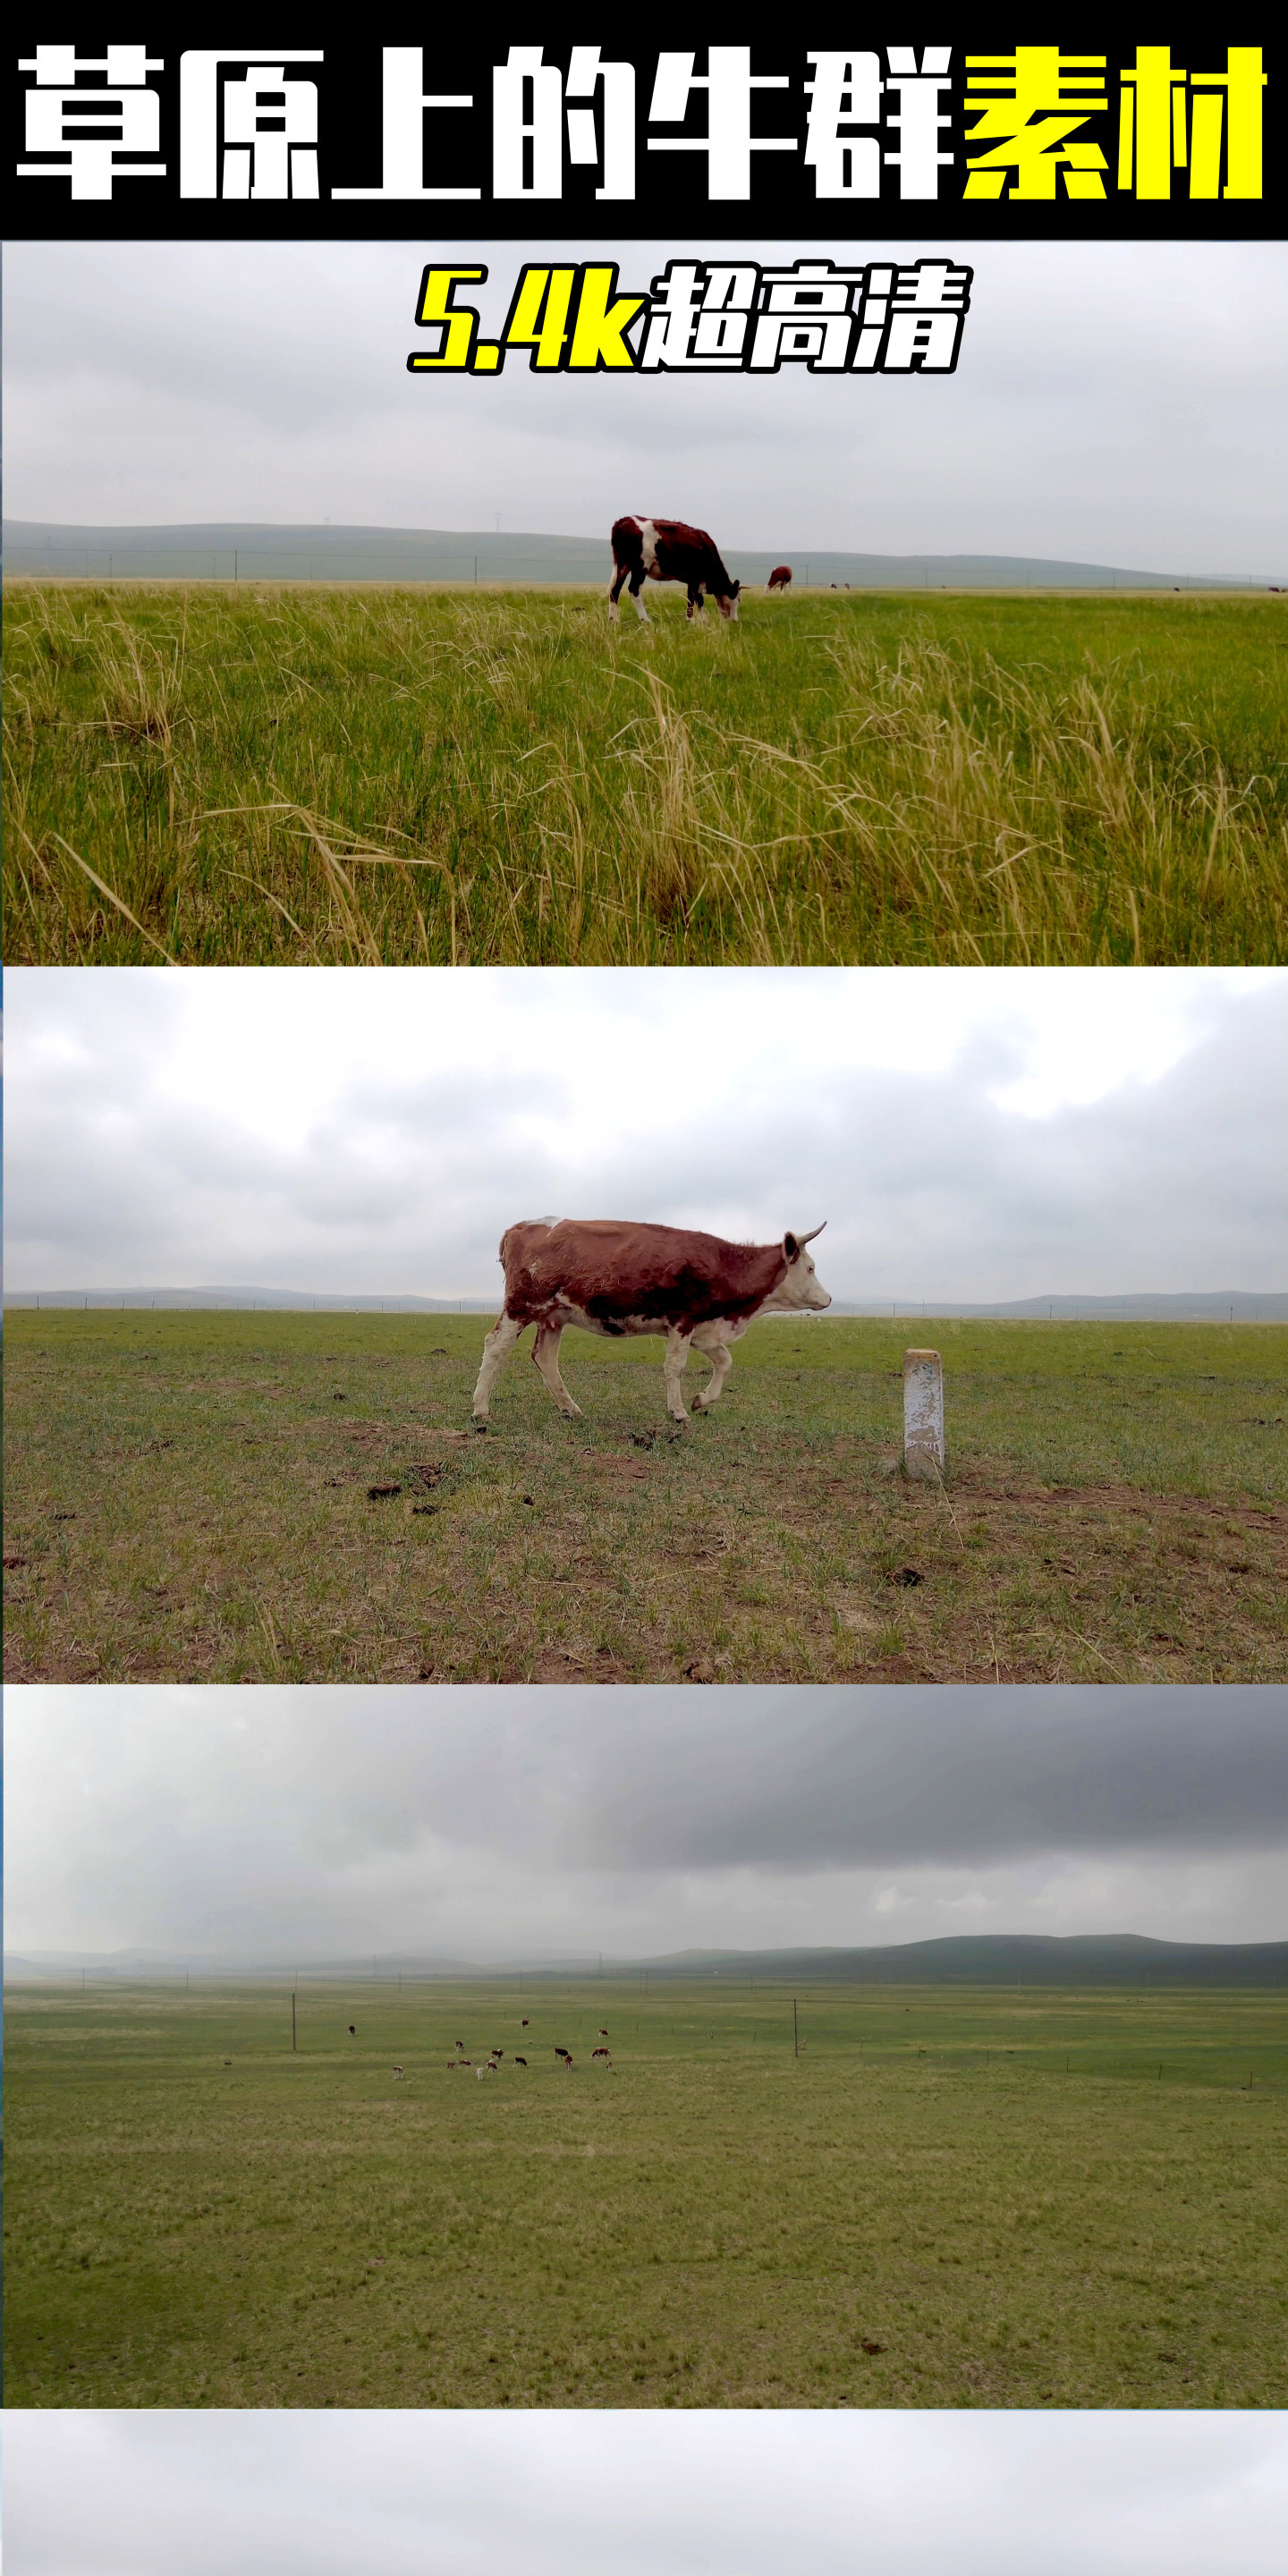 5.4k超高清多角度拍摄草原上的牛群素材